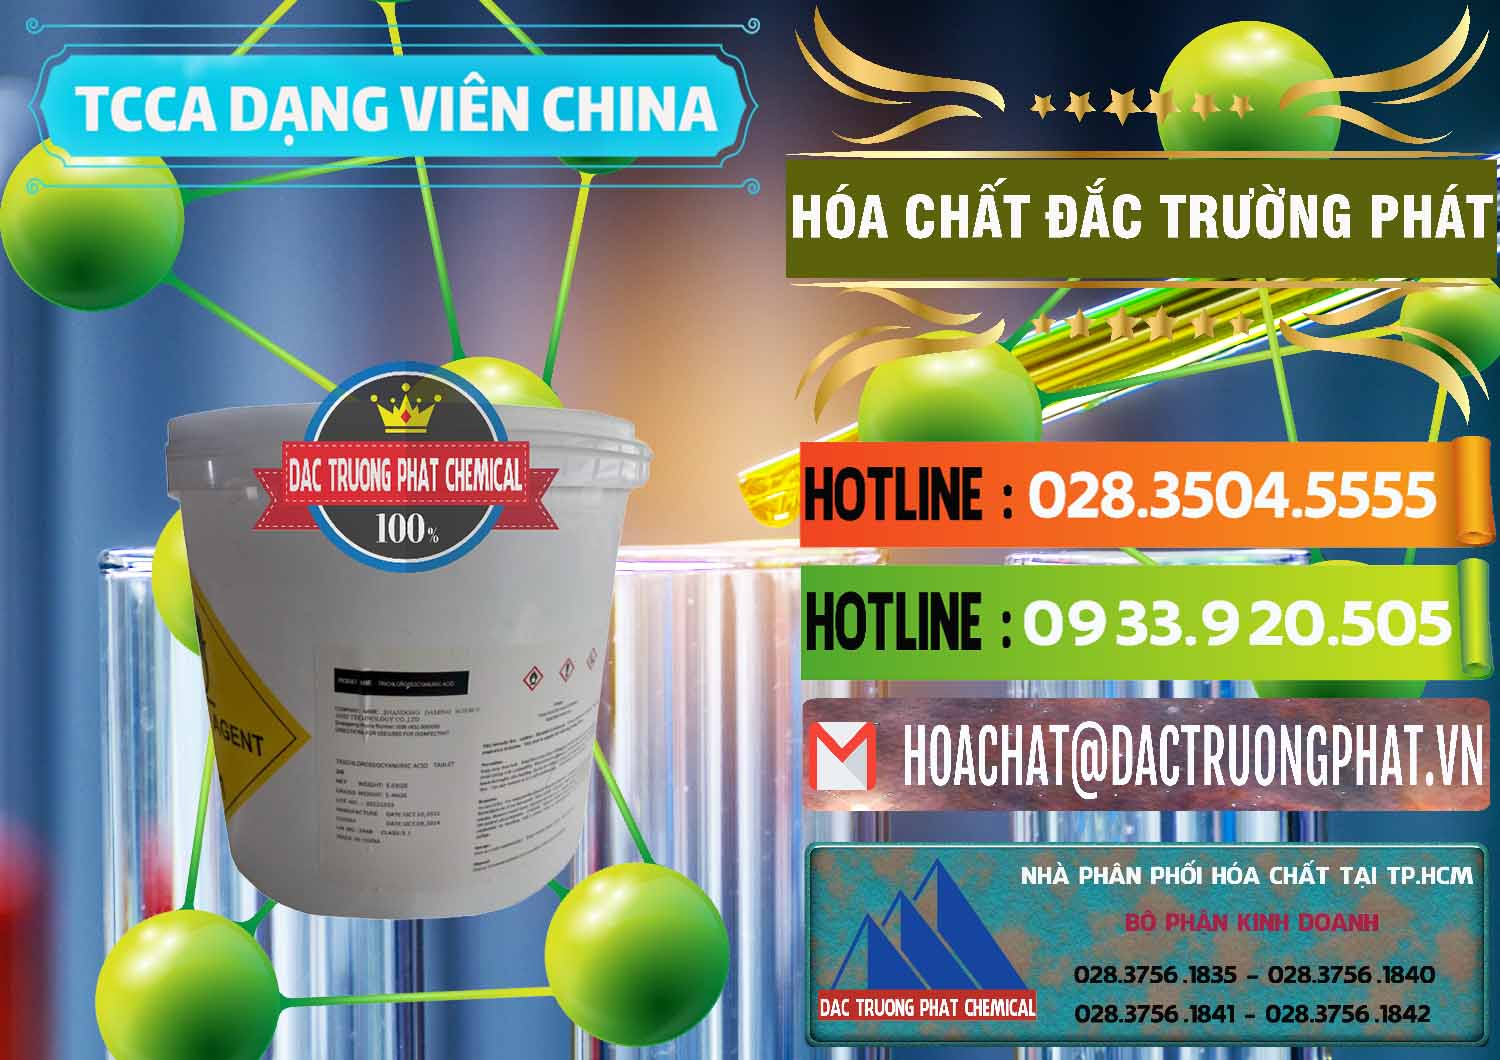 Cty bán ( cung cấp ) TCCA - Acid Trichloroisocyanuric Dạng Viên Thùng 5kg Trung Quốc China - 0379 - Nhà cung ứng ( phân phối ) hóa chất tại TP.HCM - cungcaphoachat.com.vn